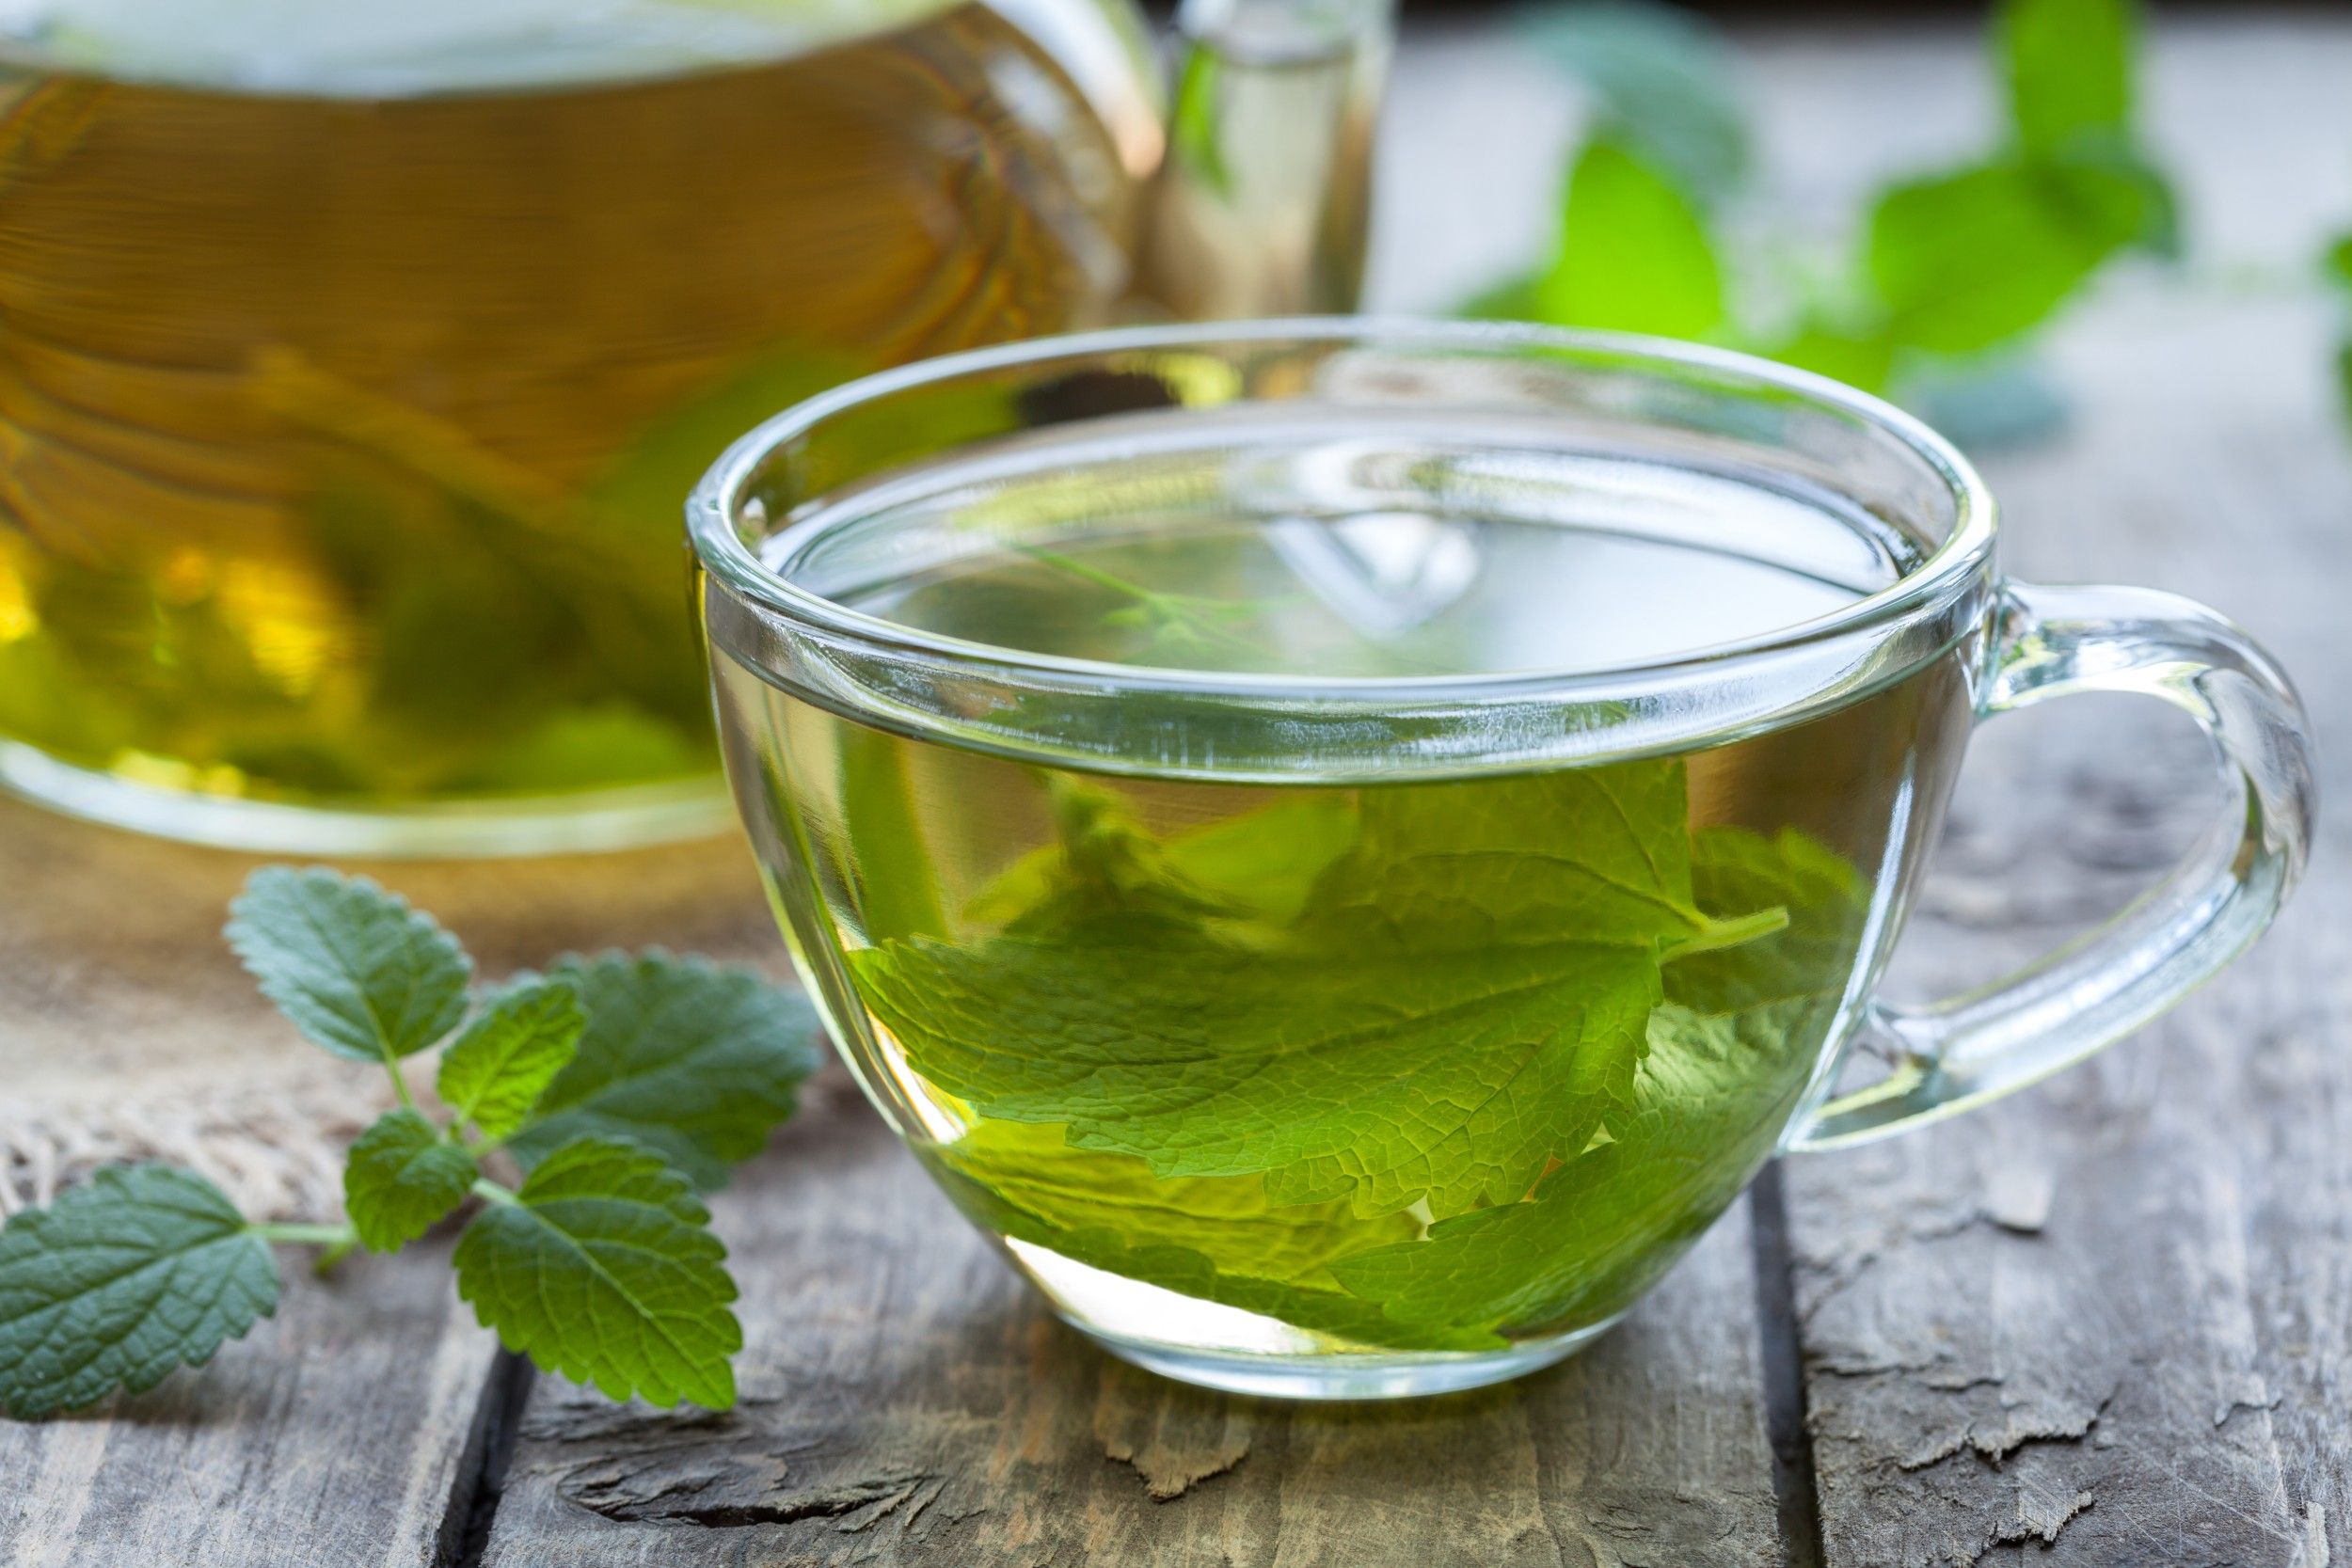 Chá de erva-cidreira: veja os principais benefícios e aprenda a fazer